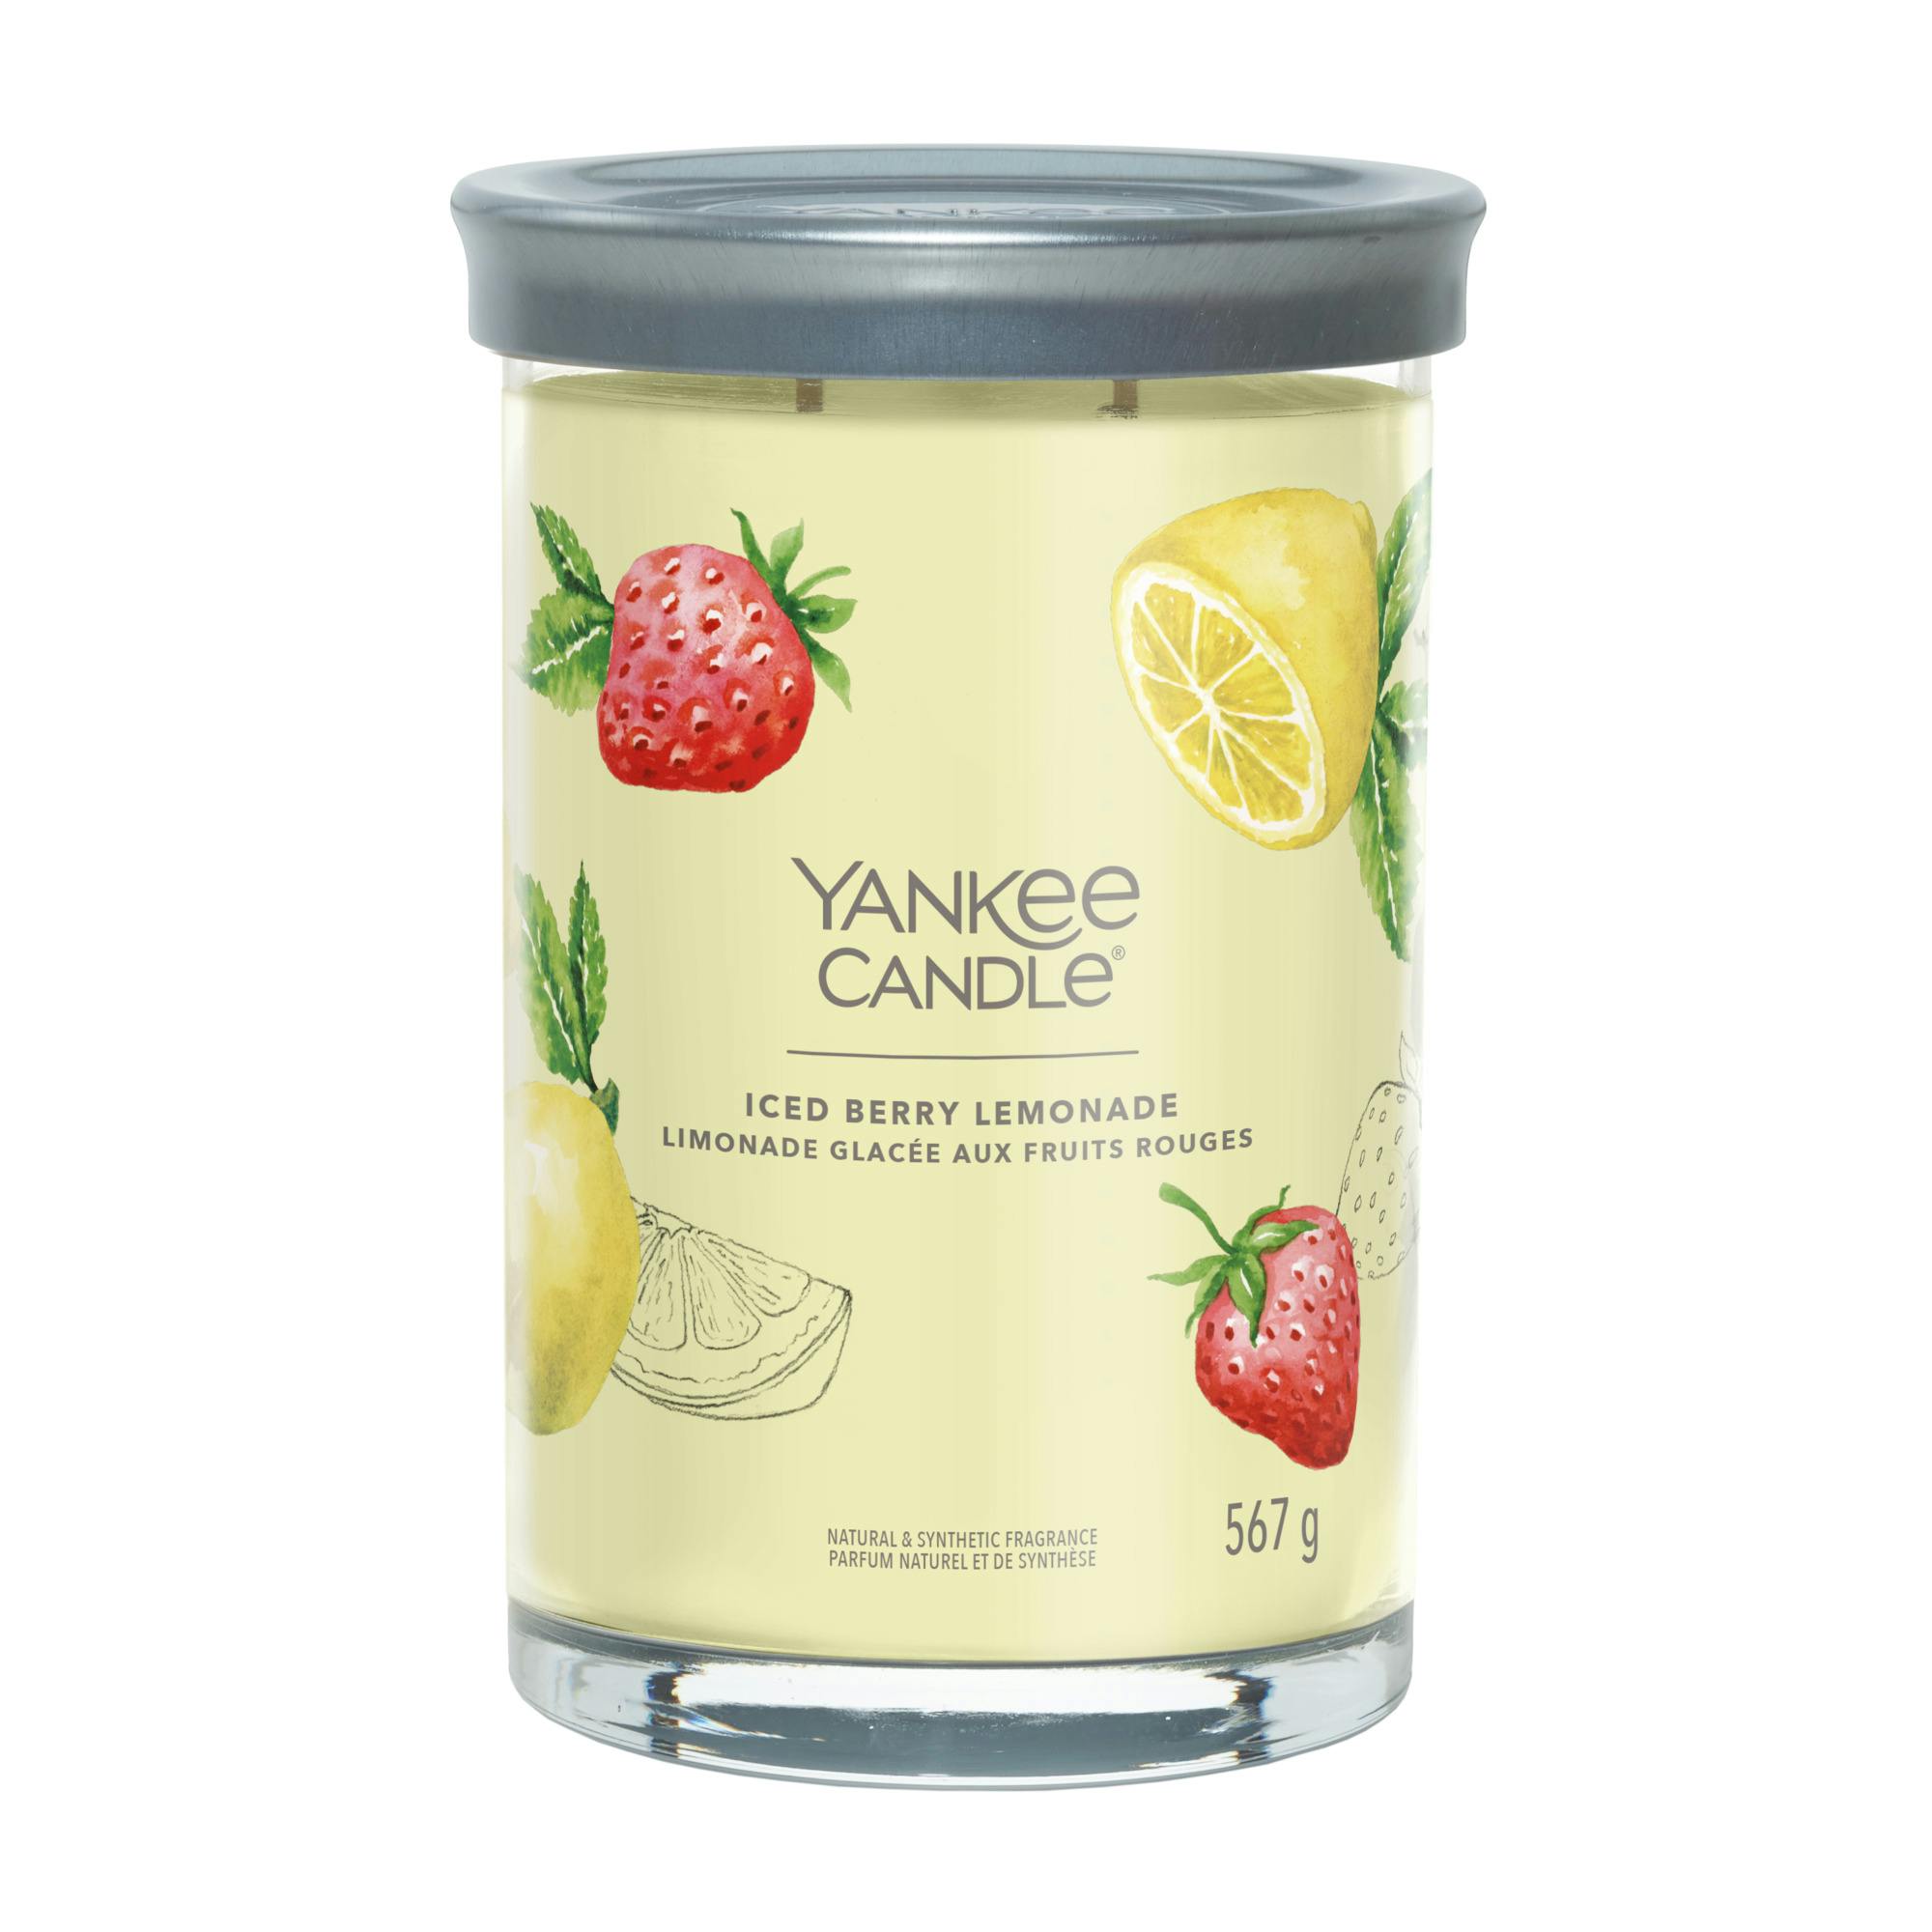 Yankee Candle Signature Large Tumbler Iced Berry Lemonade 567 g